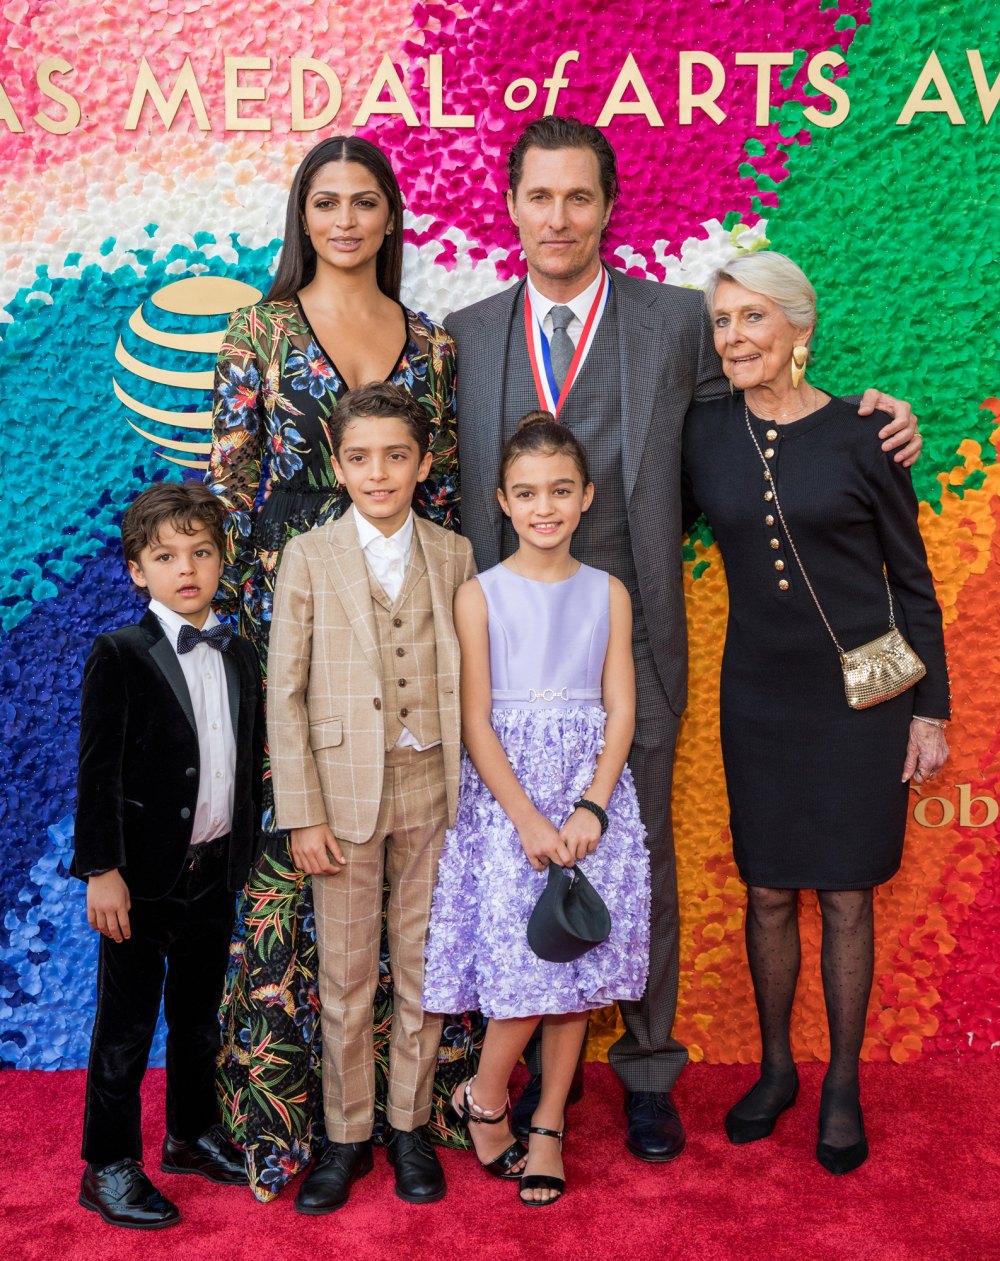 Matthew McConaughey und seine Frau Camila erscheinen mit Kindern auf dem roten Teppich